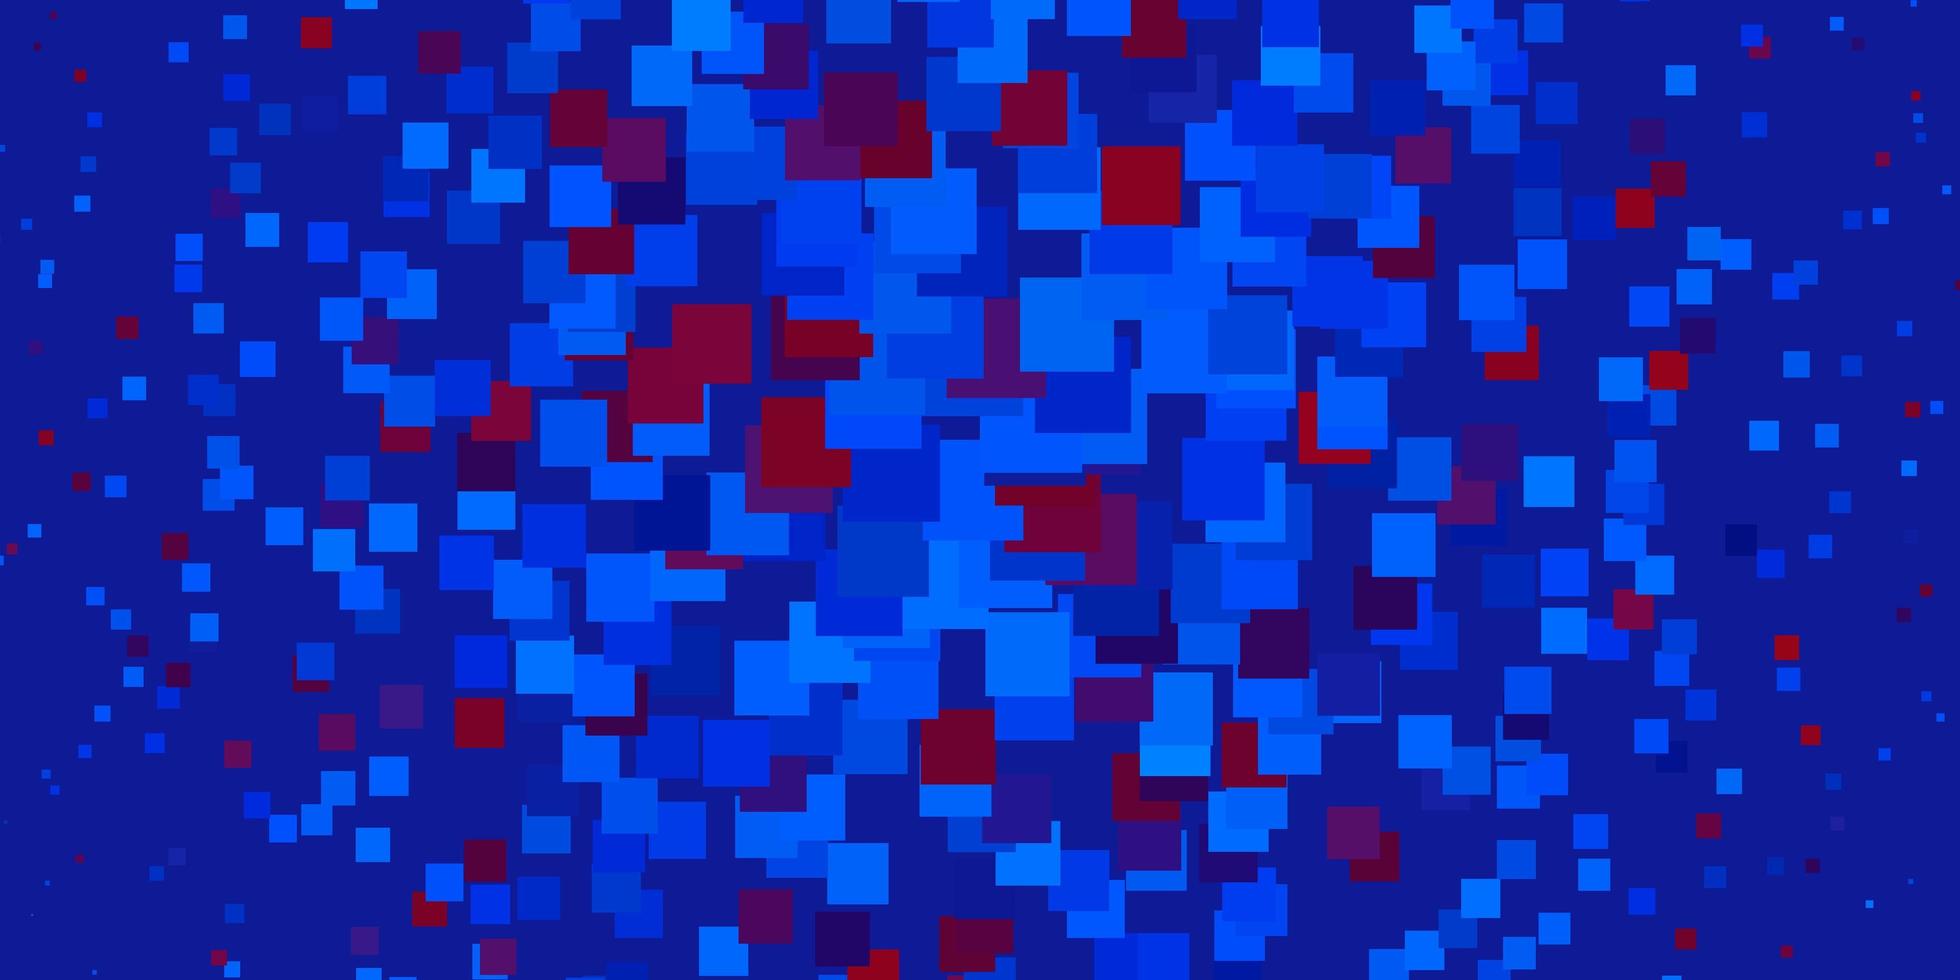 sfondo vettoriale rosso azzurro con rettangoli nuova illustrazione astratta con forme rettangolari miglior design per il tuo banner poster pubblicitario